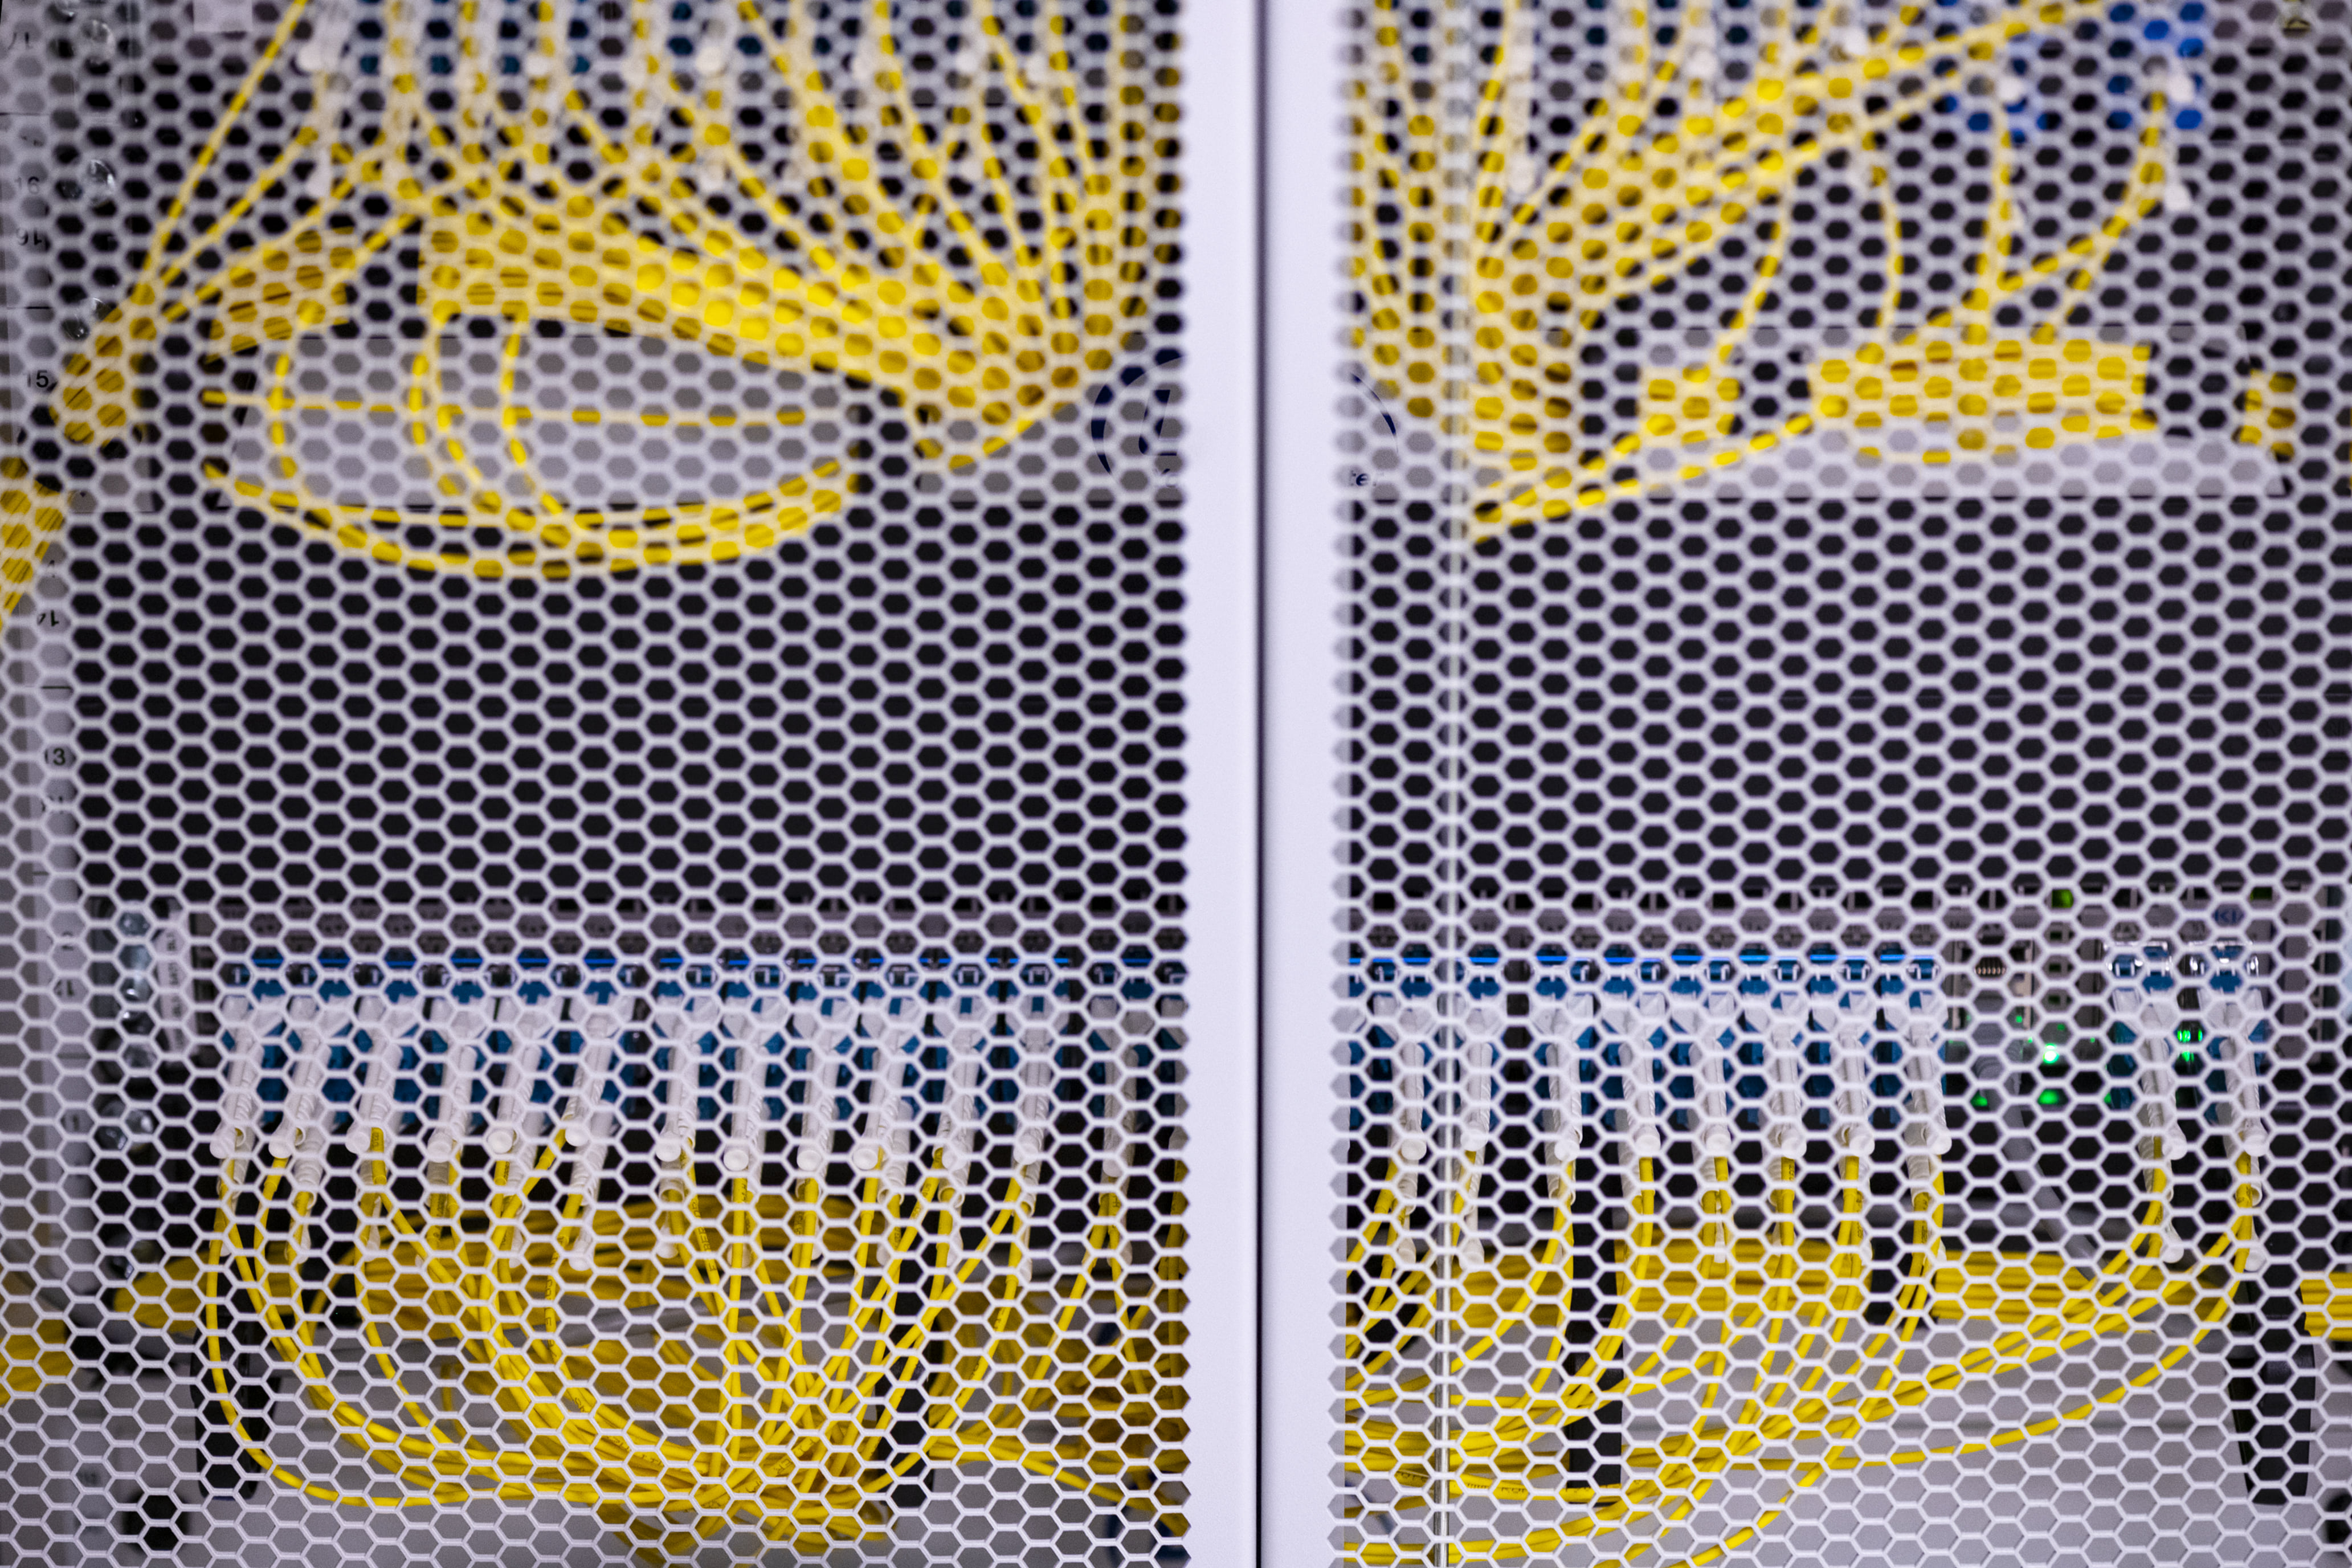 Gele kabels voor connectiviteit achter een wit raster